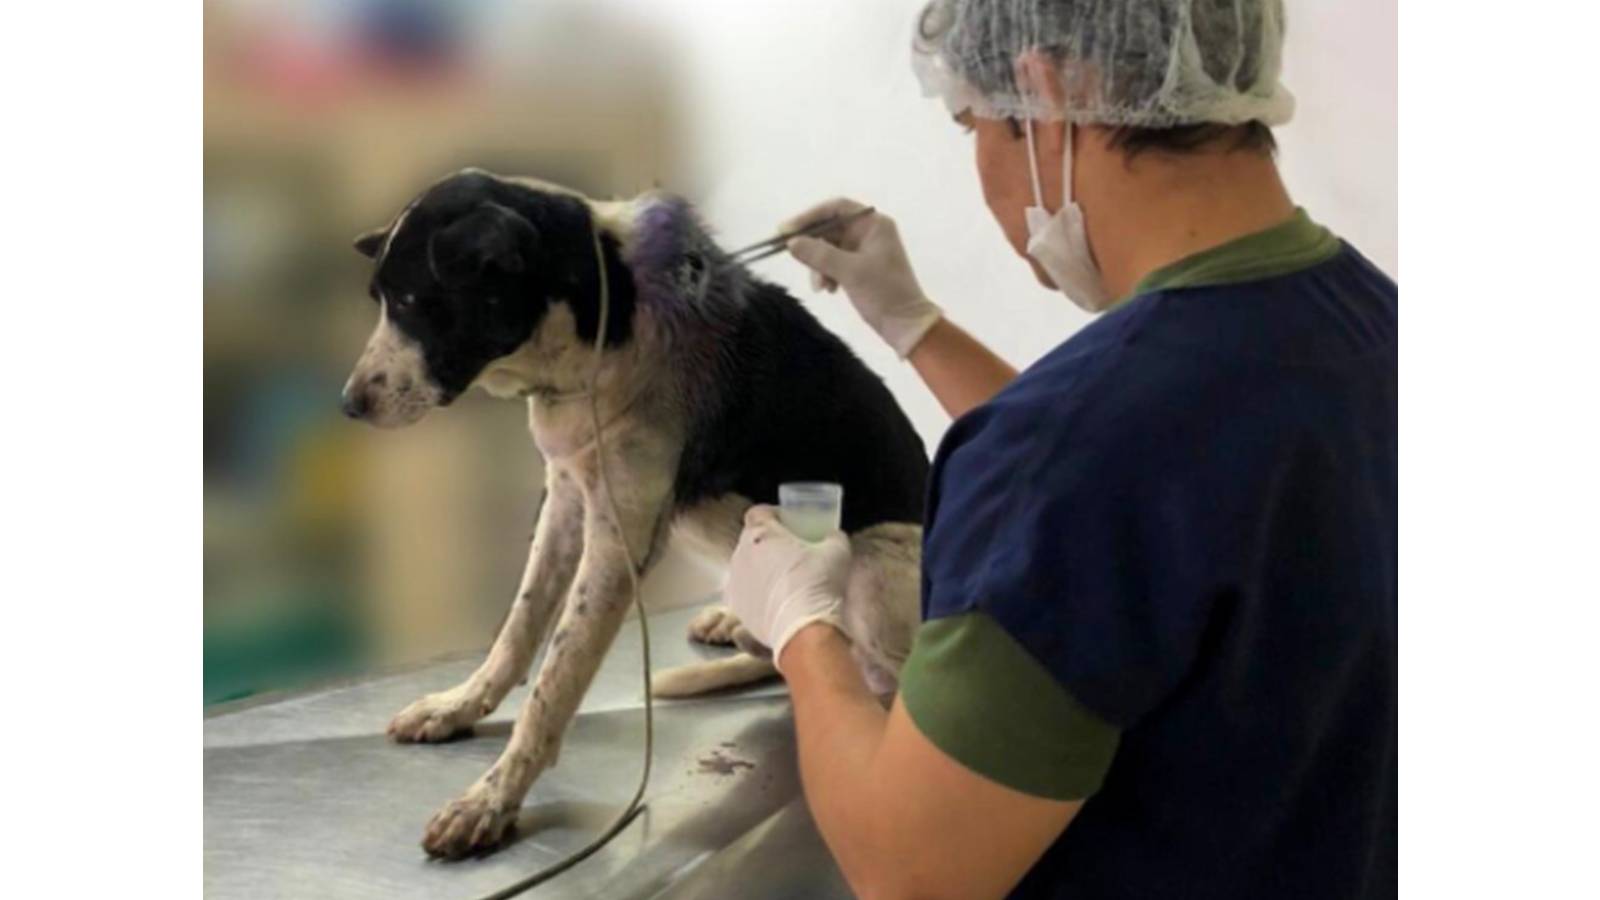 Vídeo: Com ferimento grave, cachorro entra em clínica veterinária e recebe cuidados